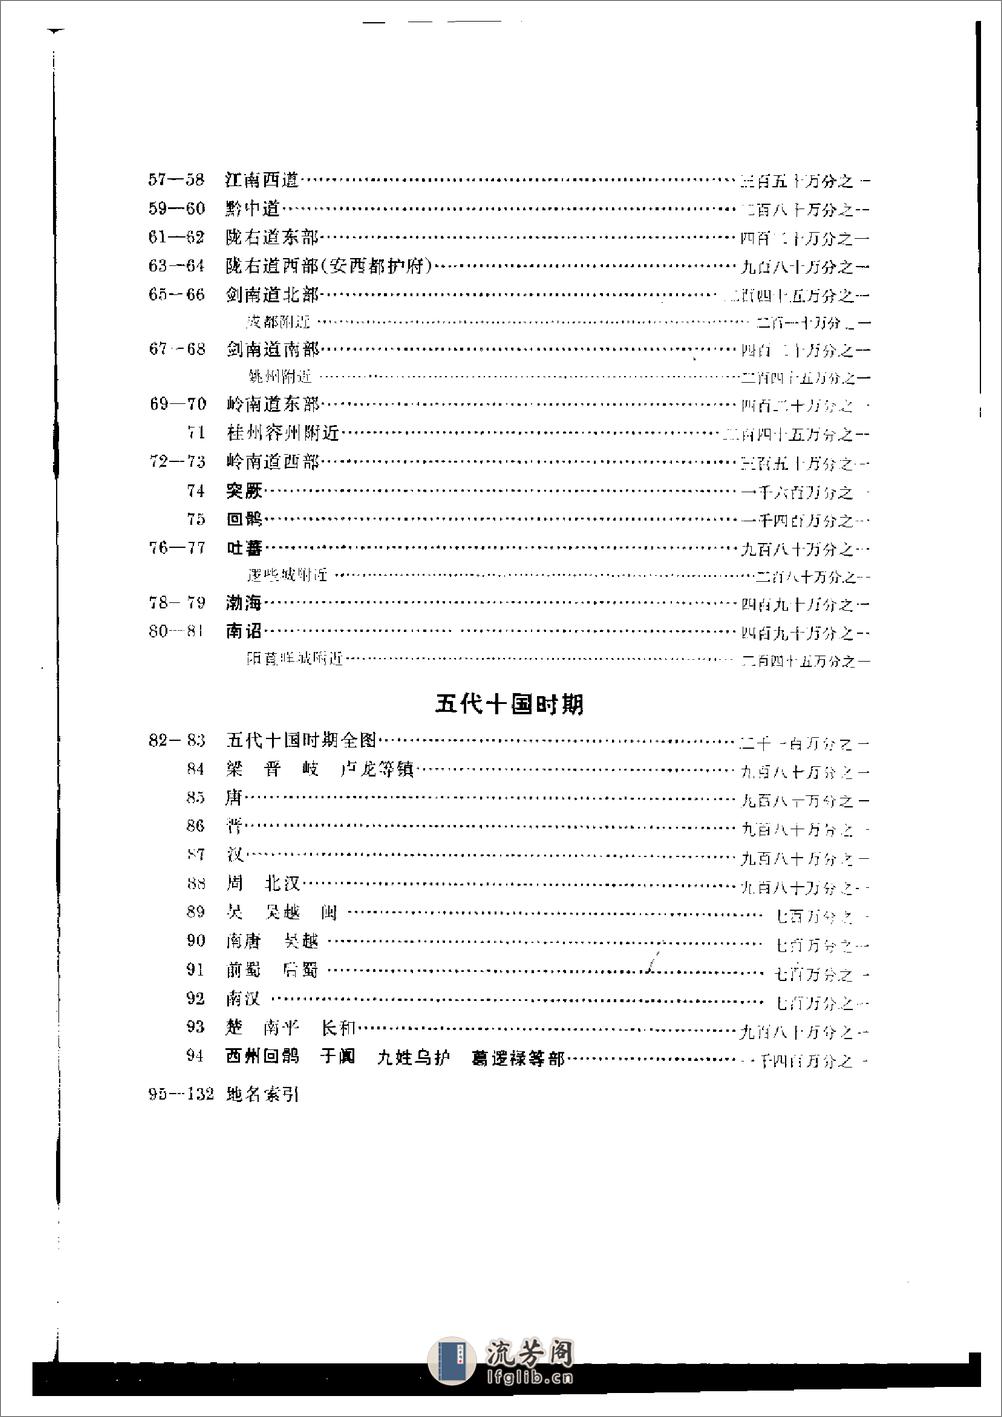 中国历史地图集_第五册(隋唐五代) - 第16页预览图